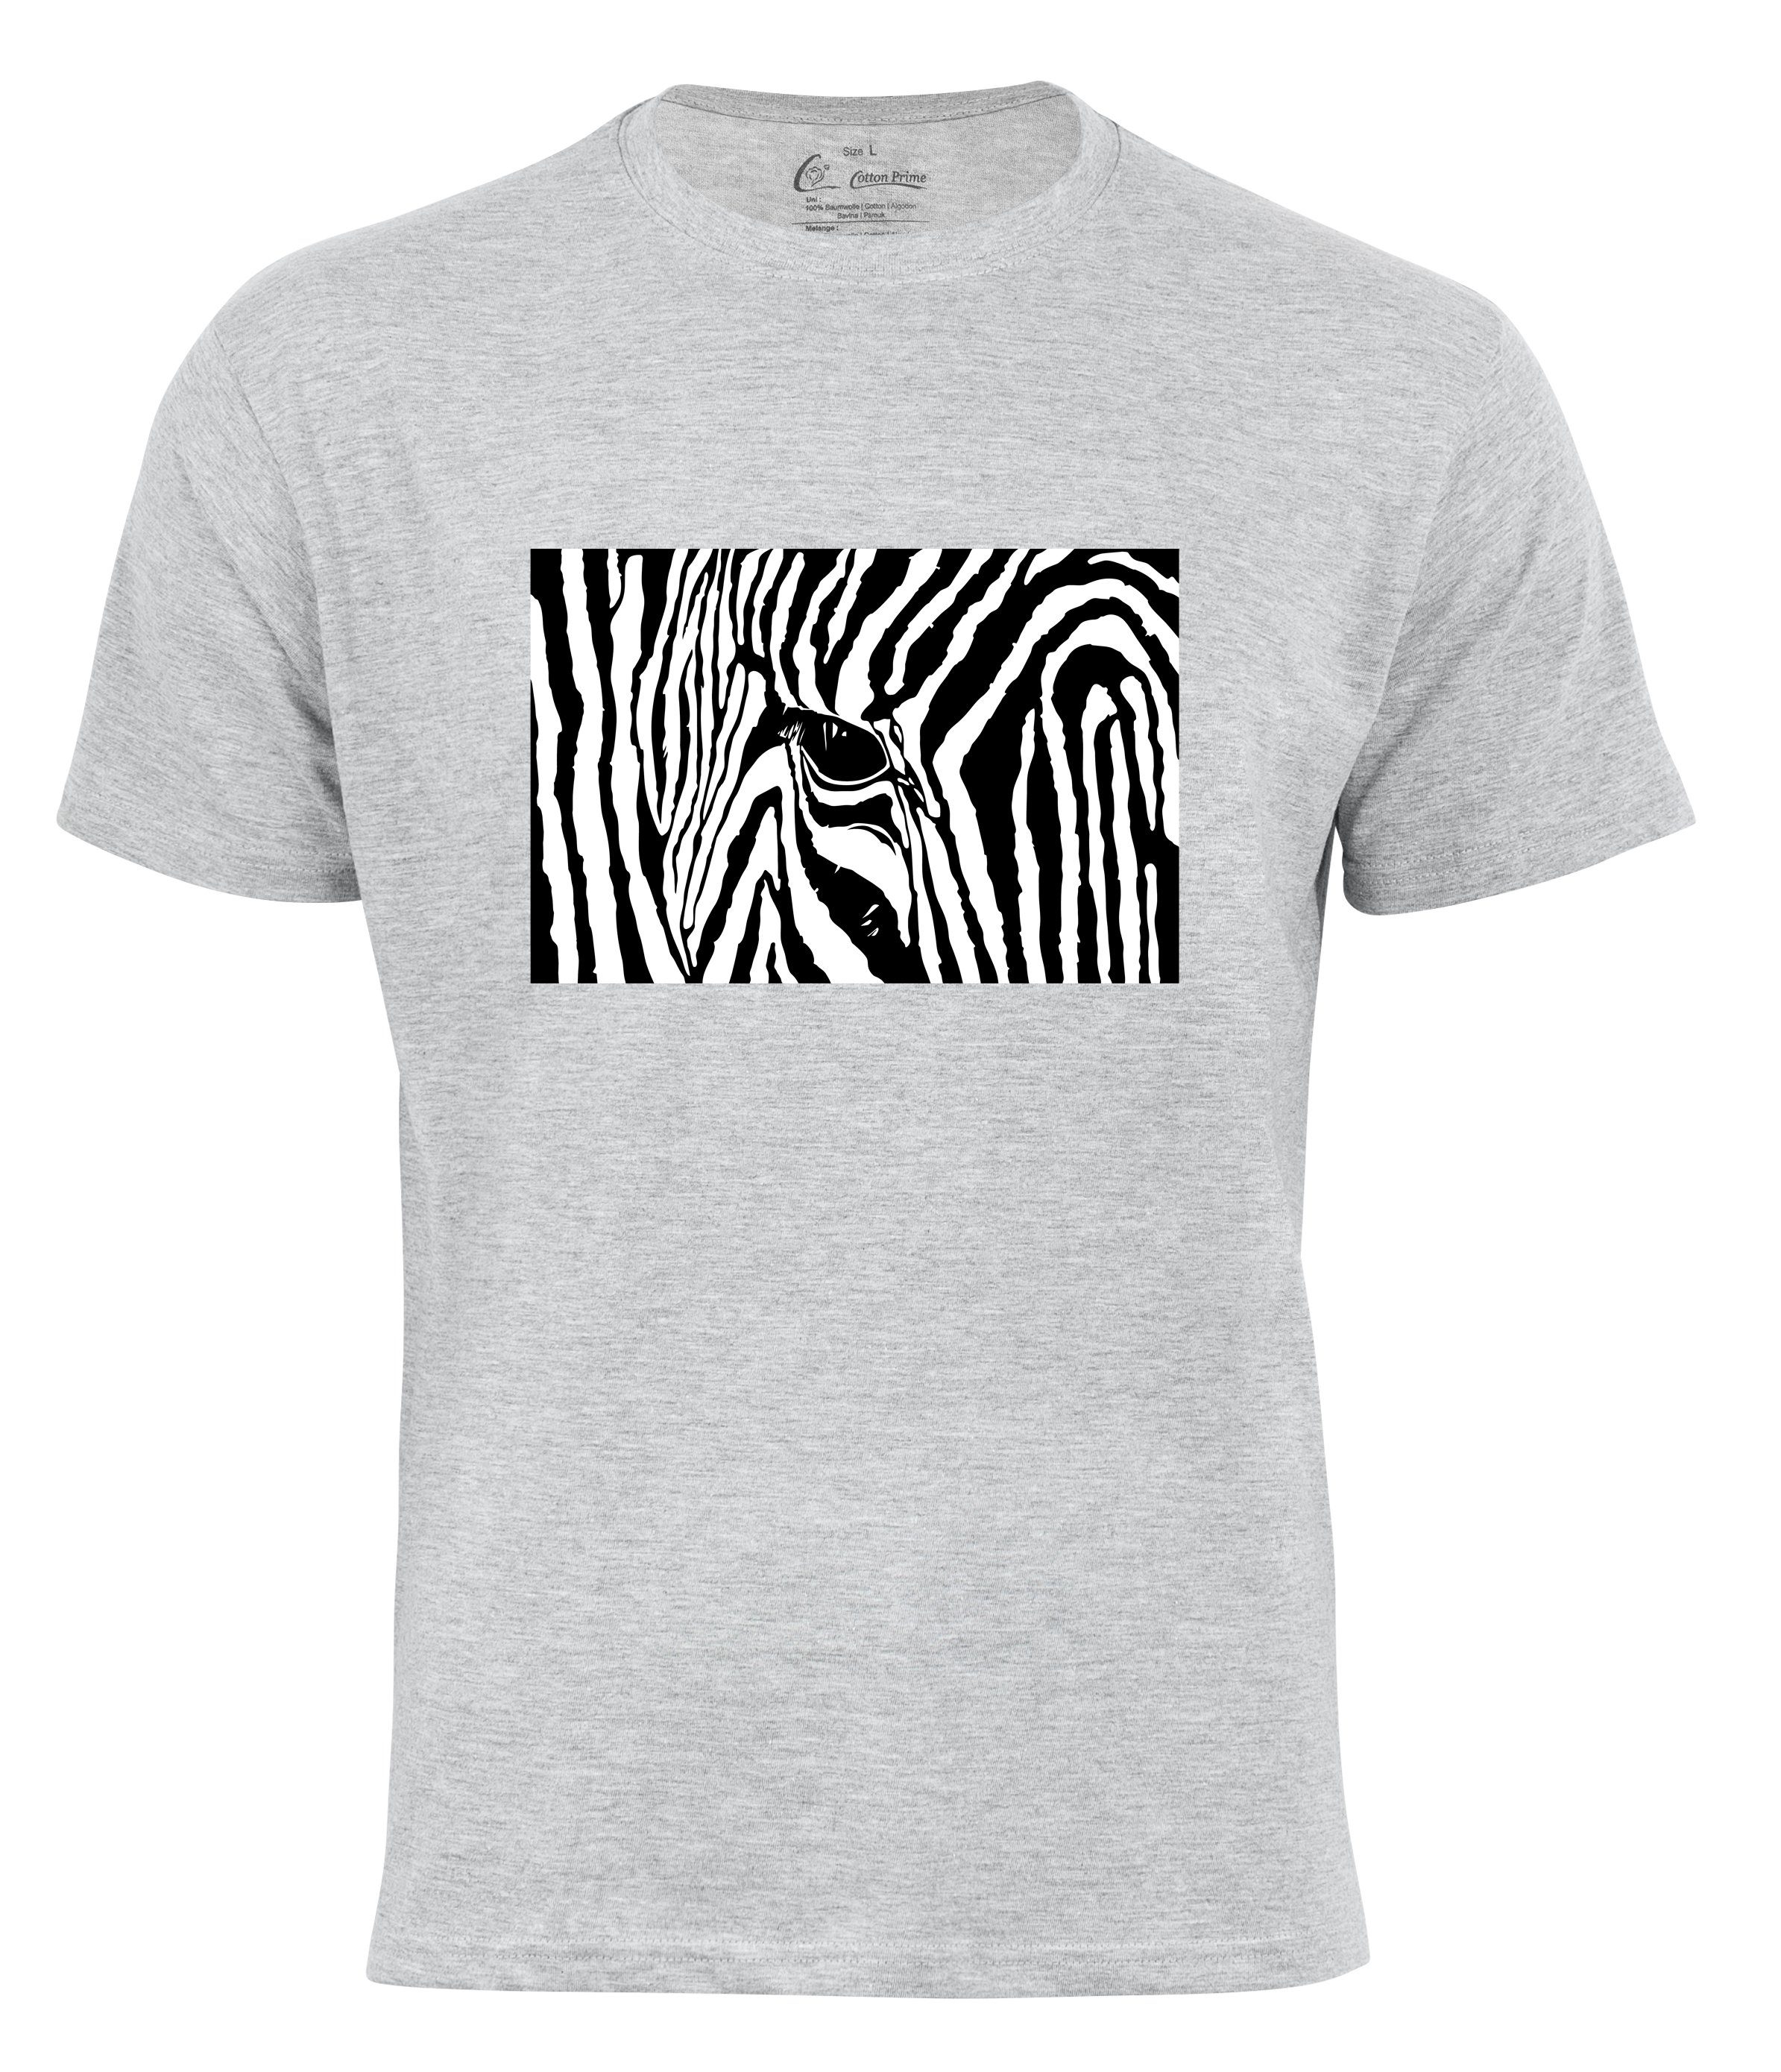 Cotton Prime® T-Shirt Black & White Zebra Eye grau